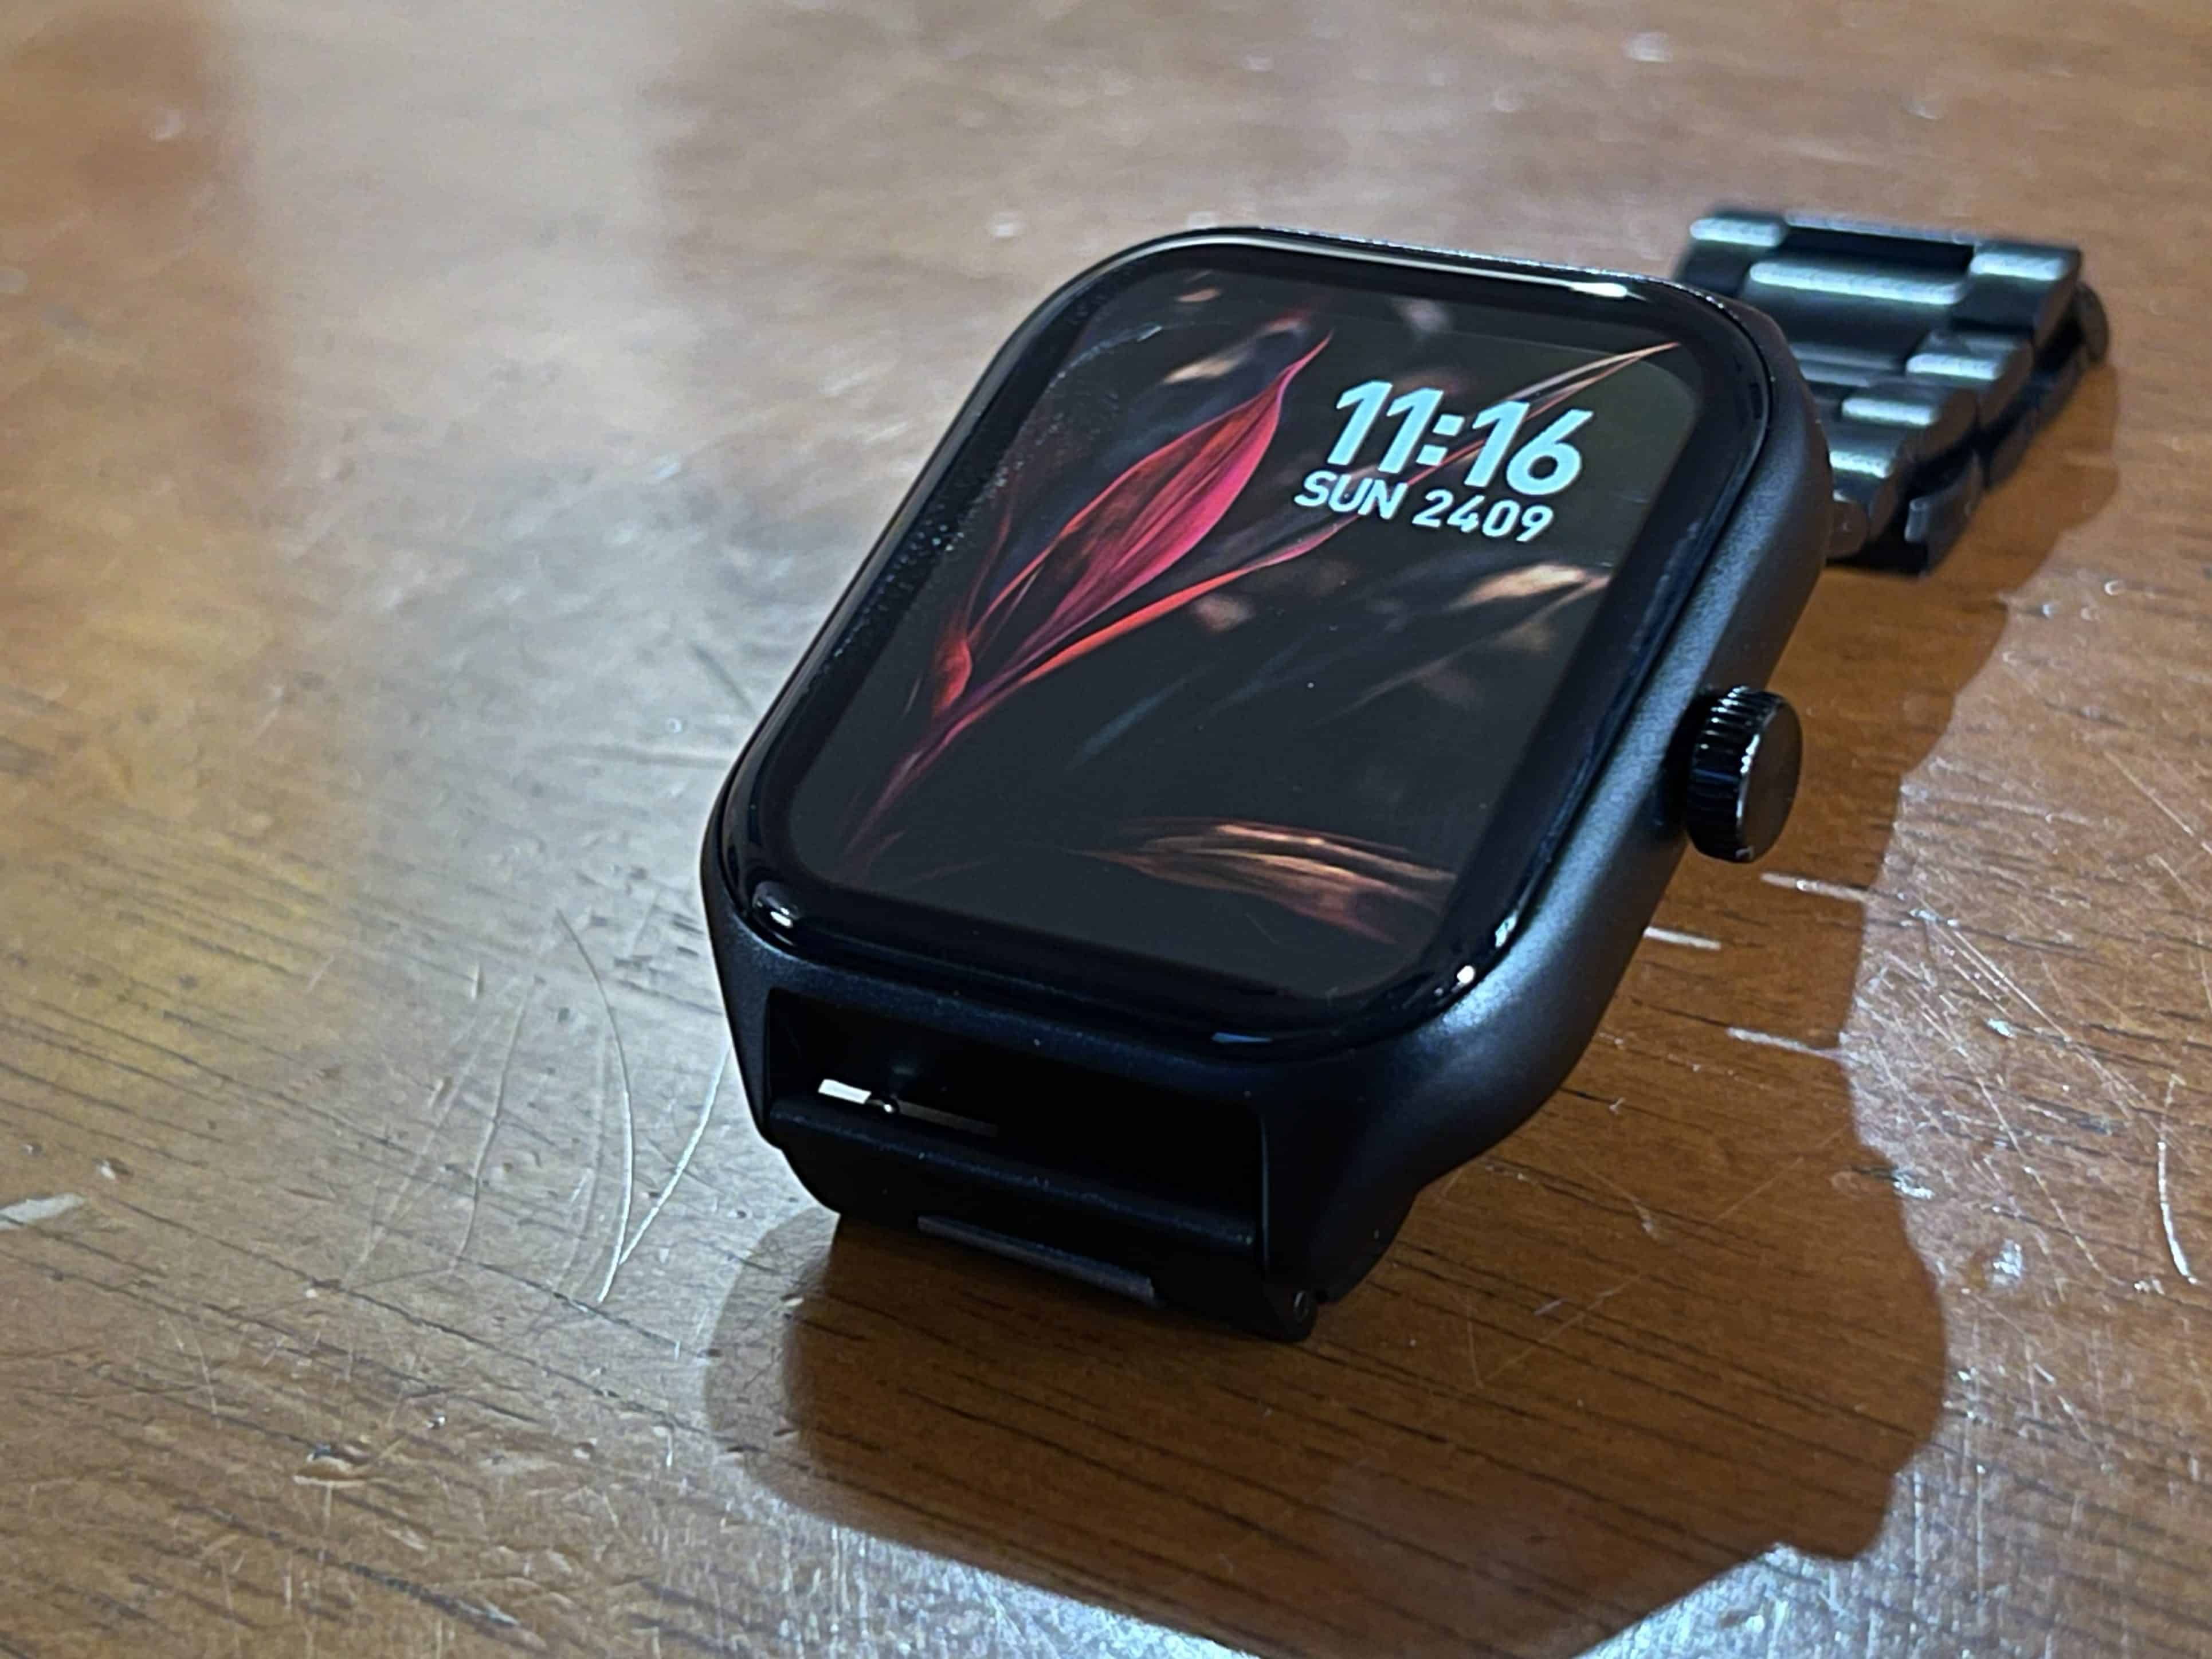 Fire-Boltt Solaris Smartwatch Review